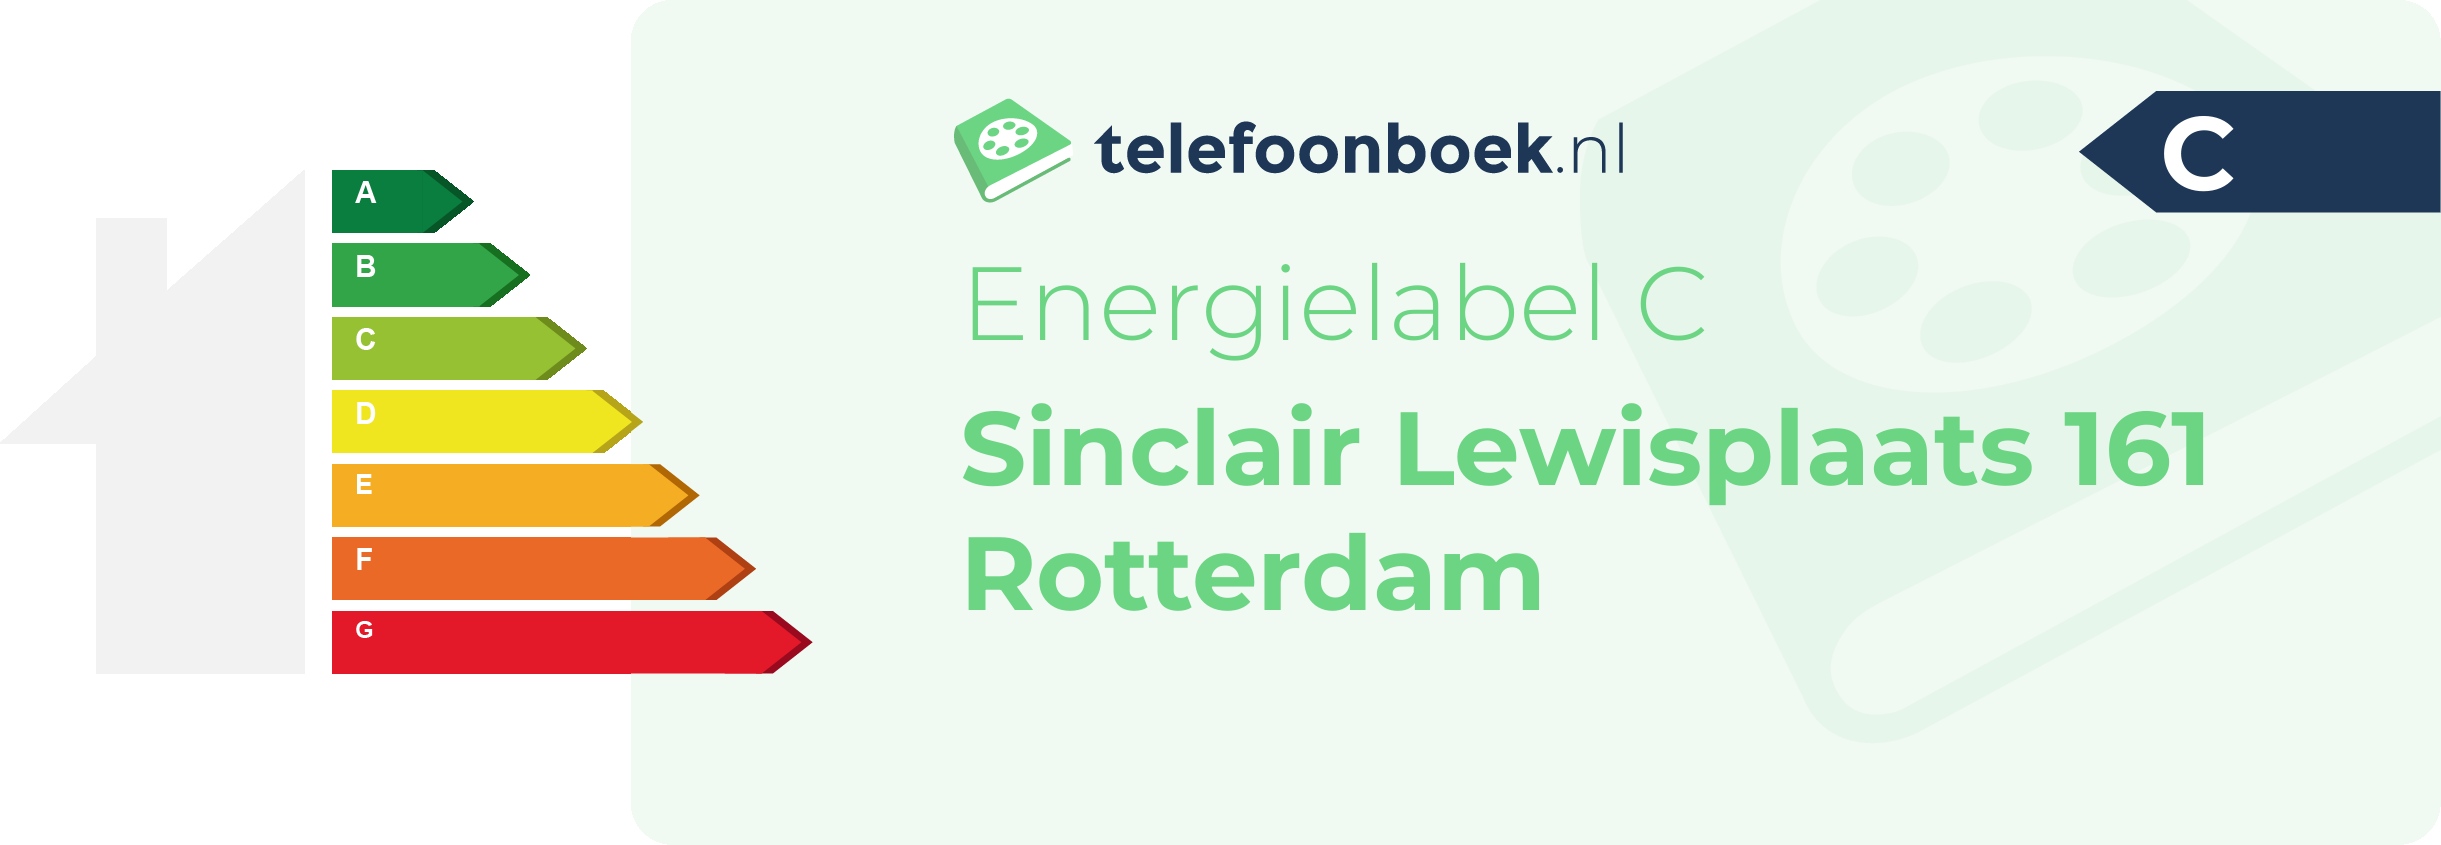 Energielabel Sinclair Lewisplaats 161 Rotterdam